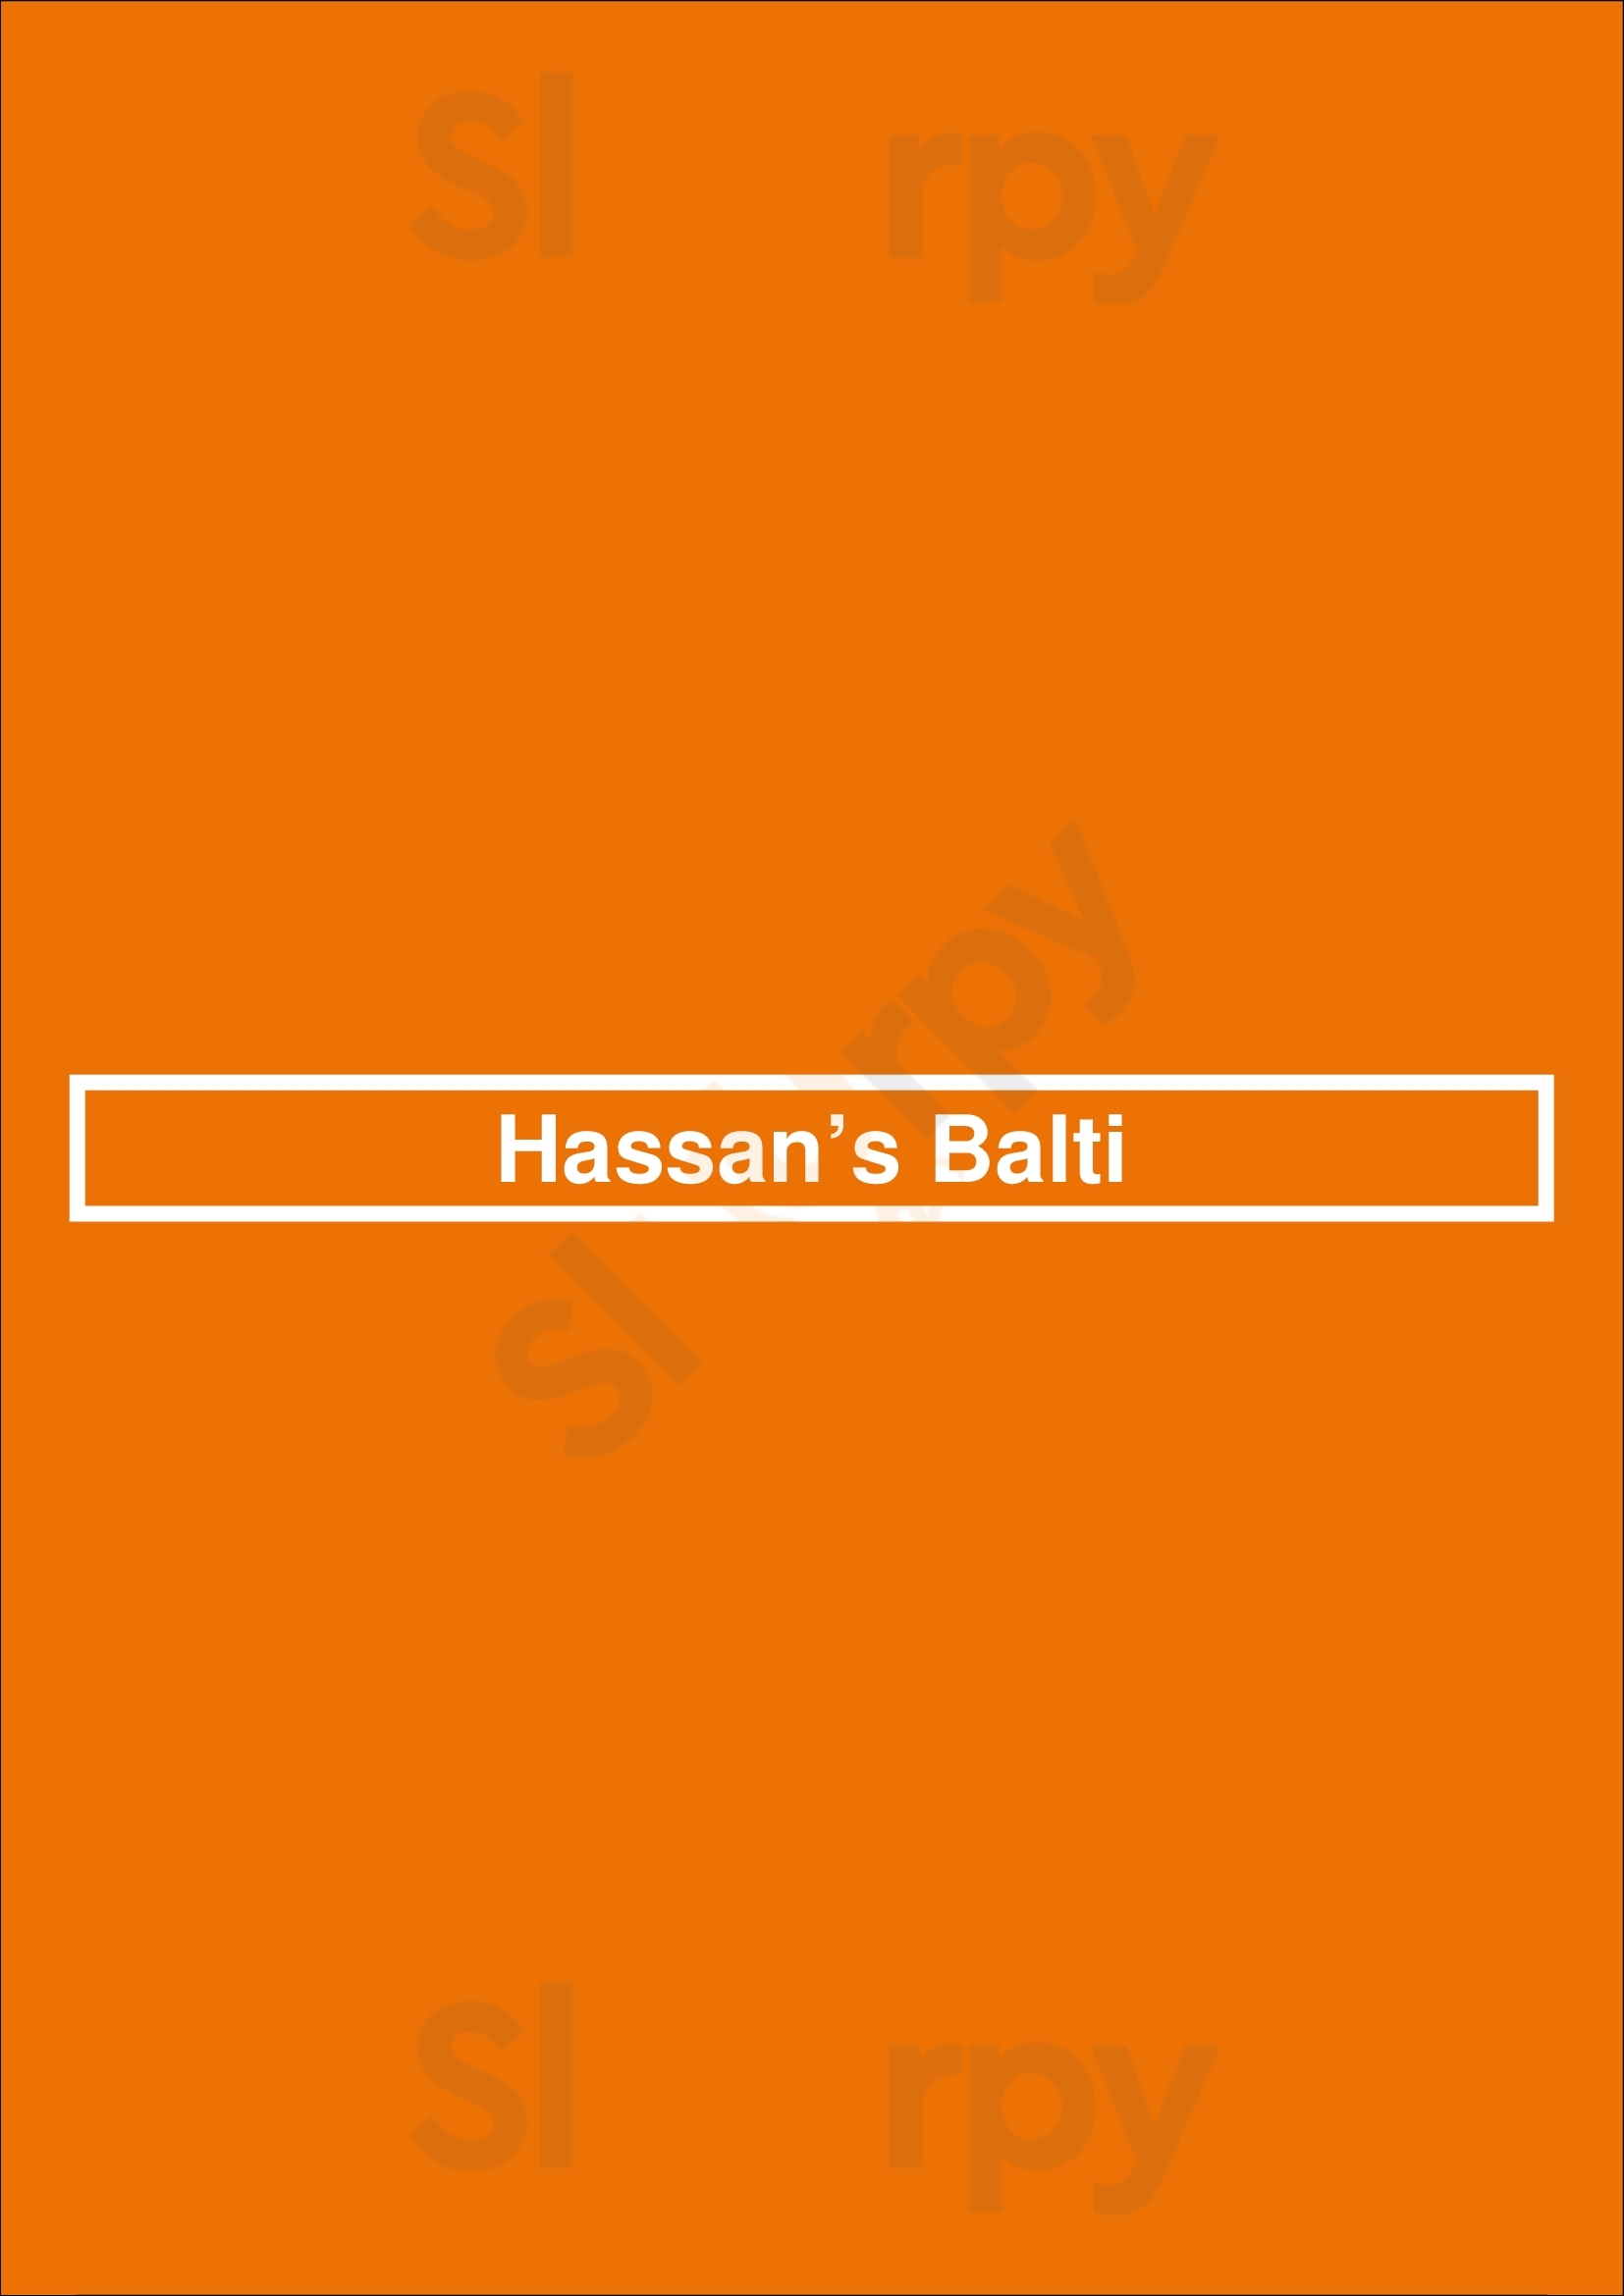 Hassan’s Balti Leicester Menu - 1